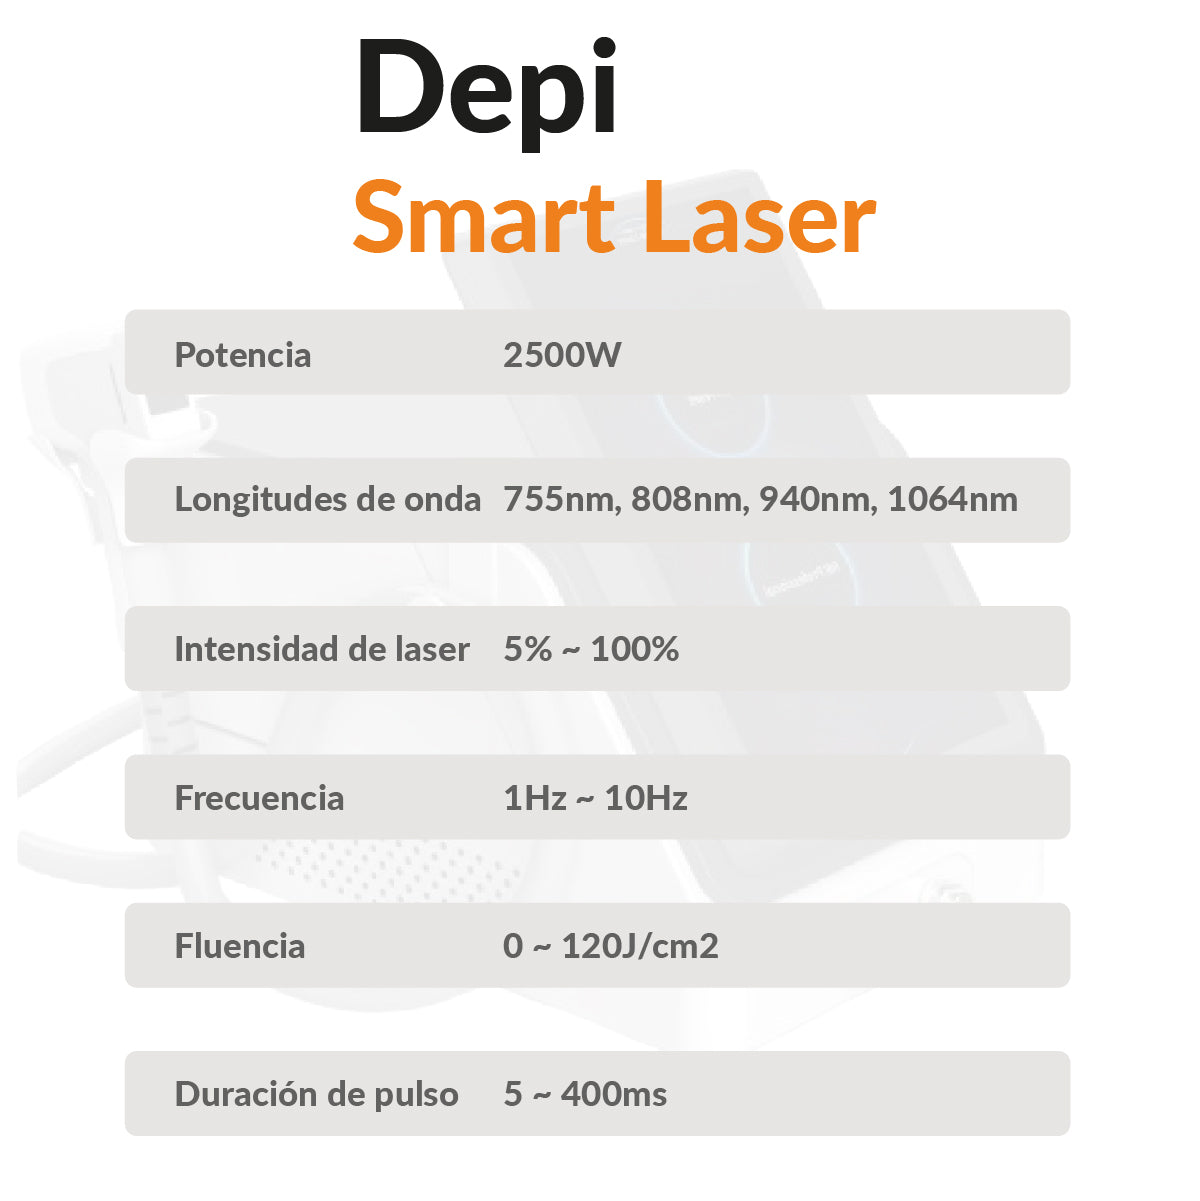 Depi Smart Laser